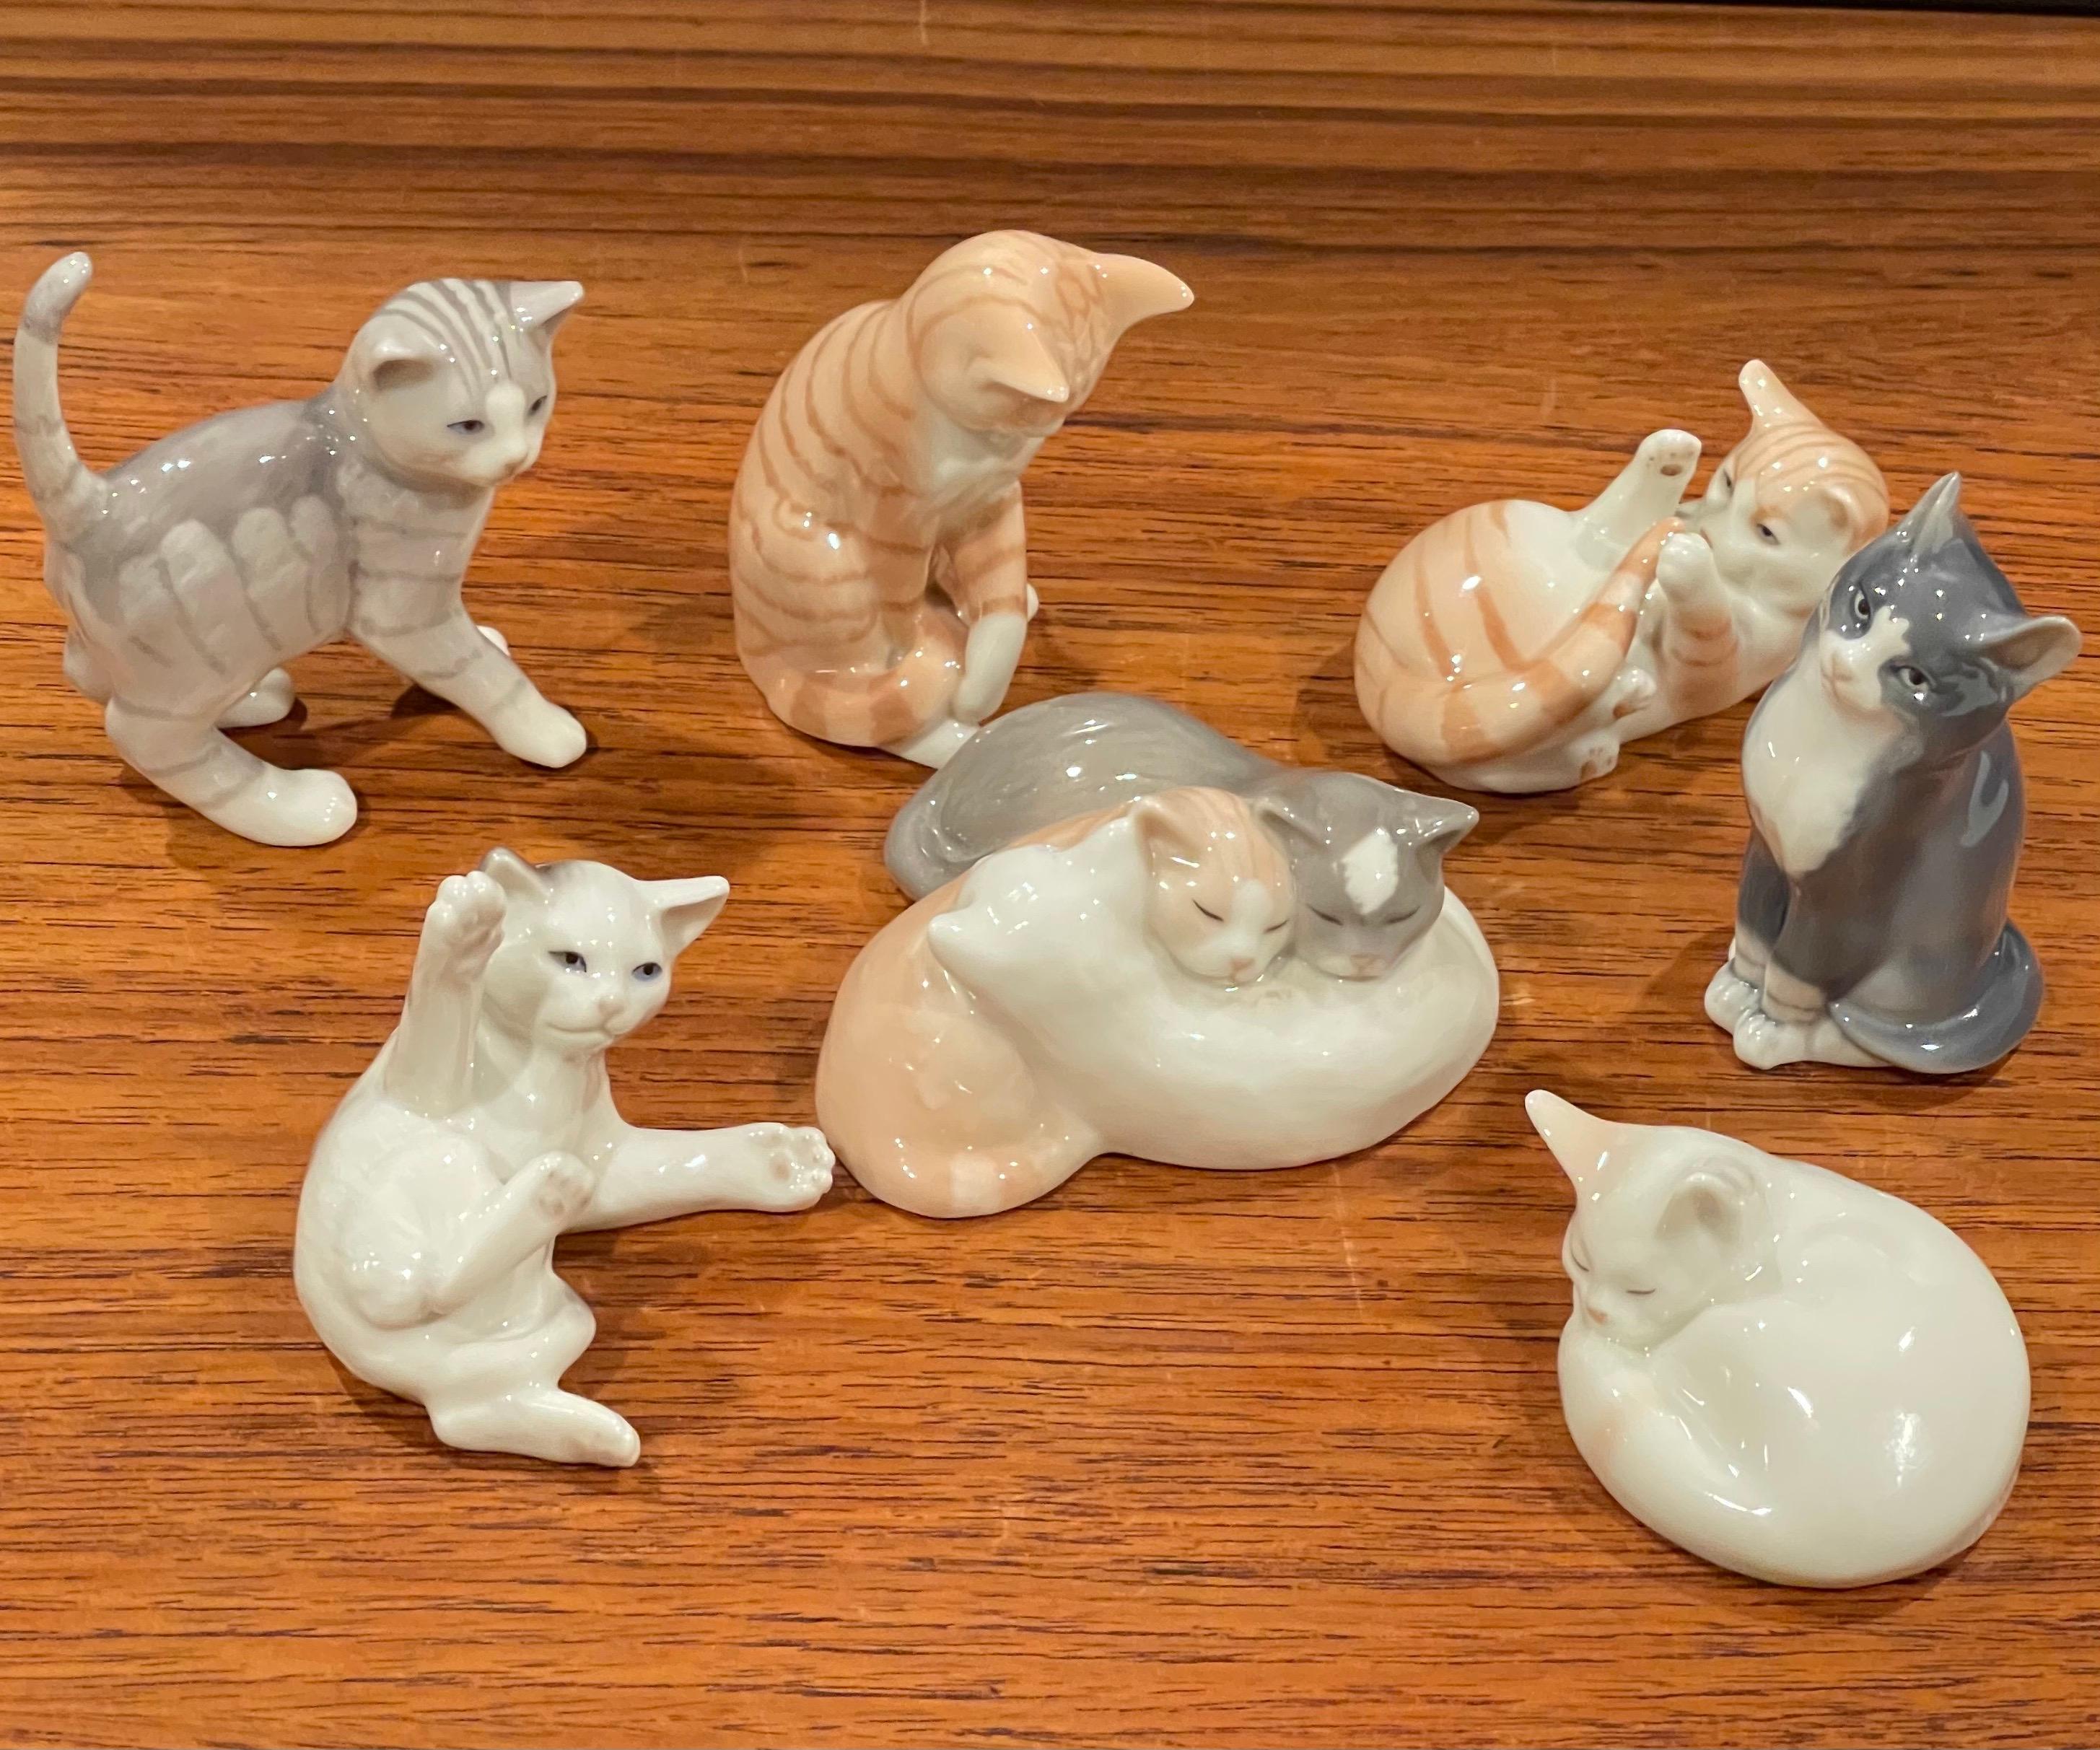 Sammlung von sieben Miniatur-Porzellan-Katzenskulpturen von Royal Copenhagen:: ca. 1970er Jahre. Die Katzen sind in sehr gutem Vintage-Zustand ohne Chips oder Risse und messen etwa 3 